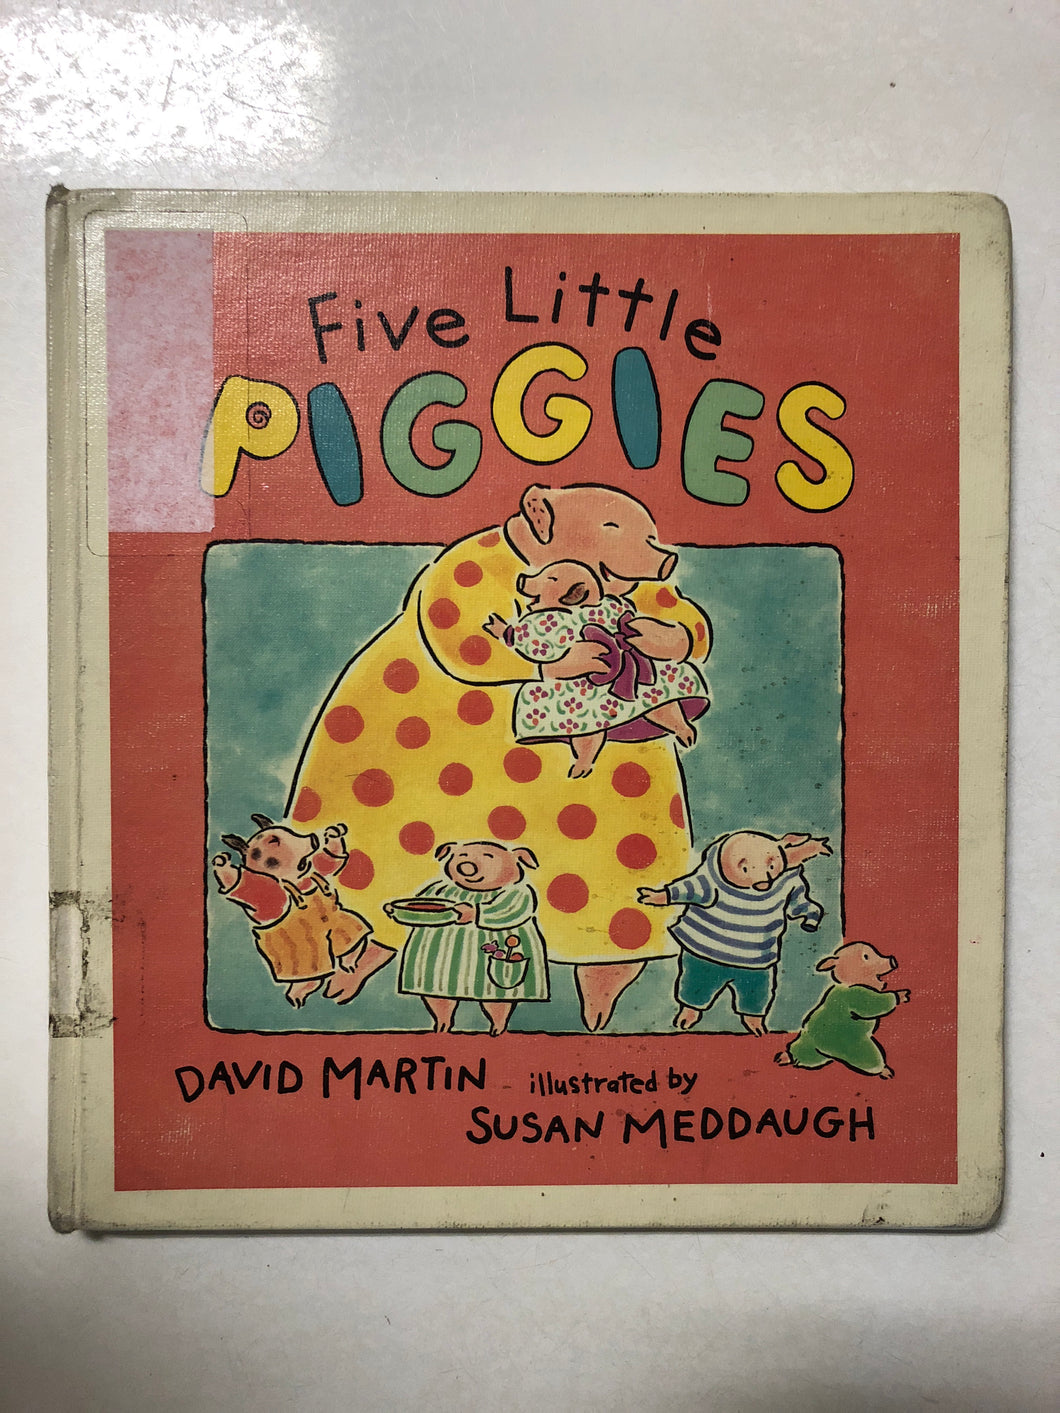 Five Little Piggies - Slick Cat Books 